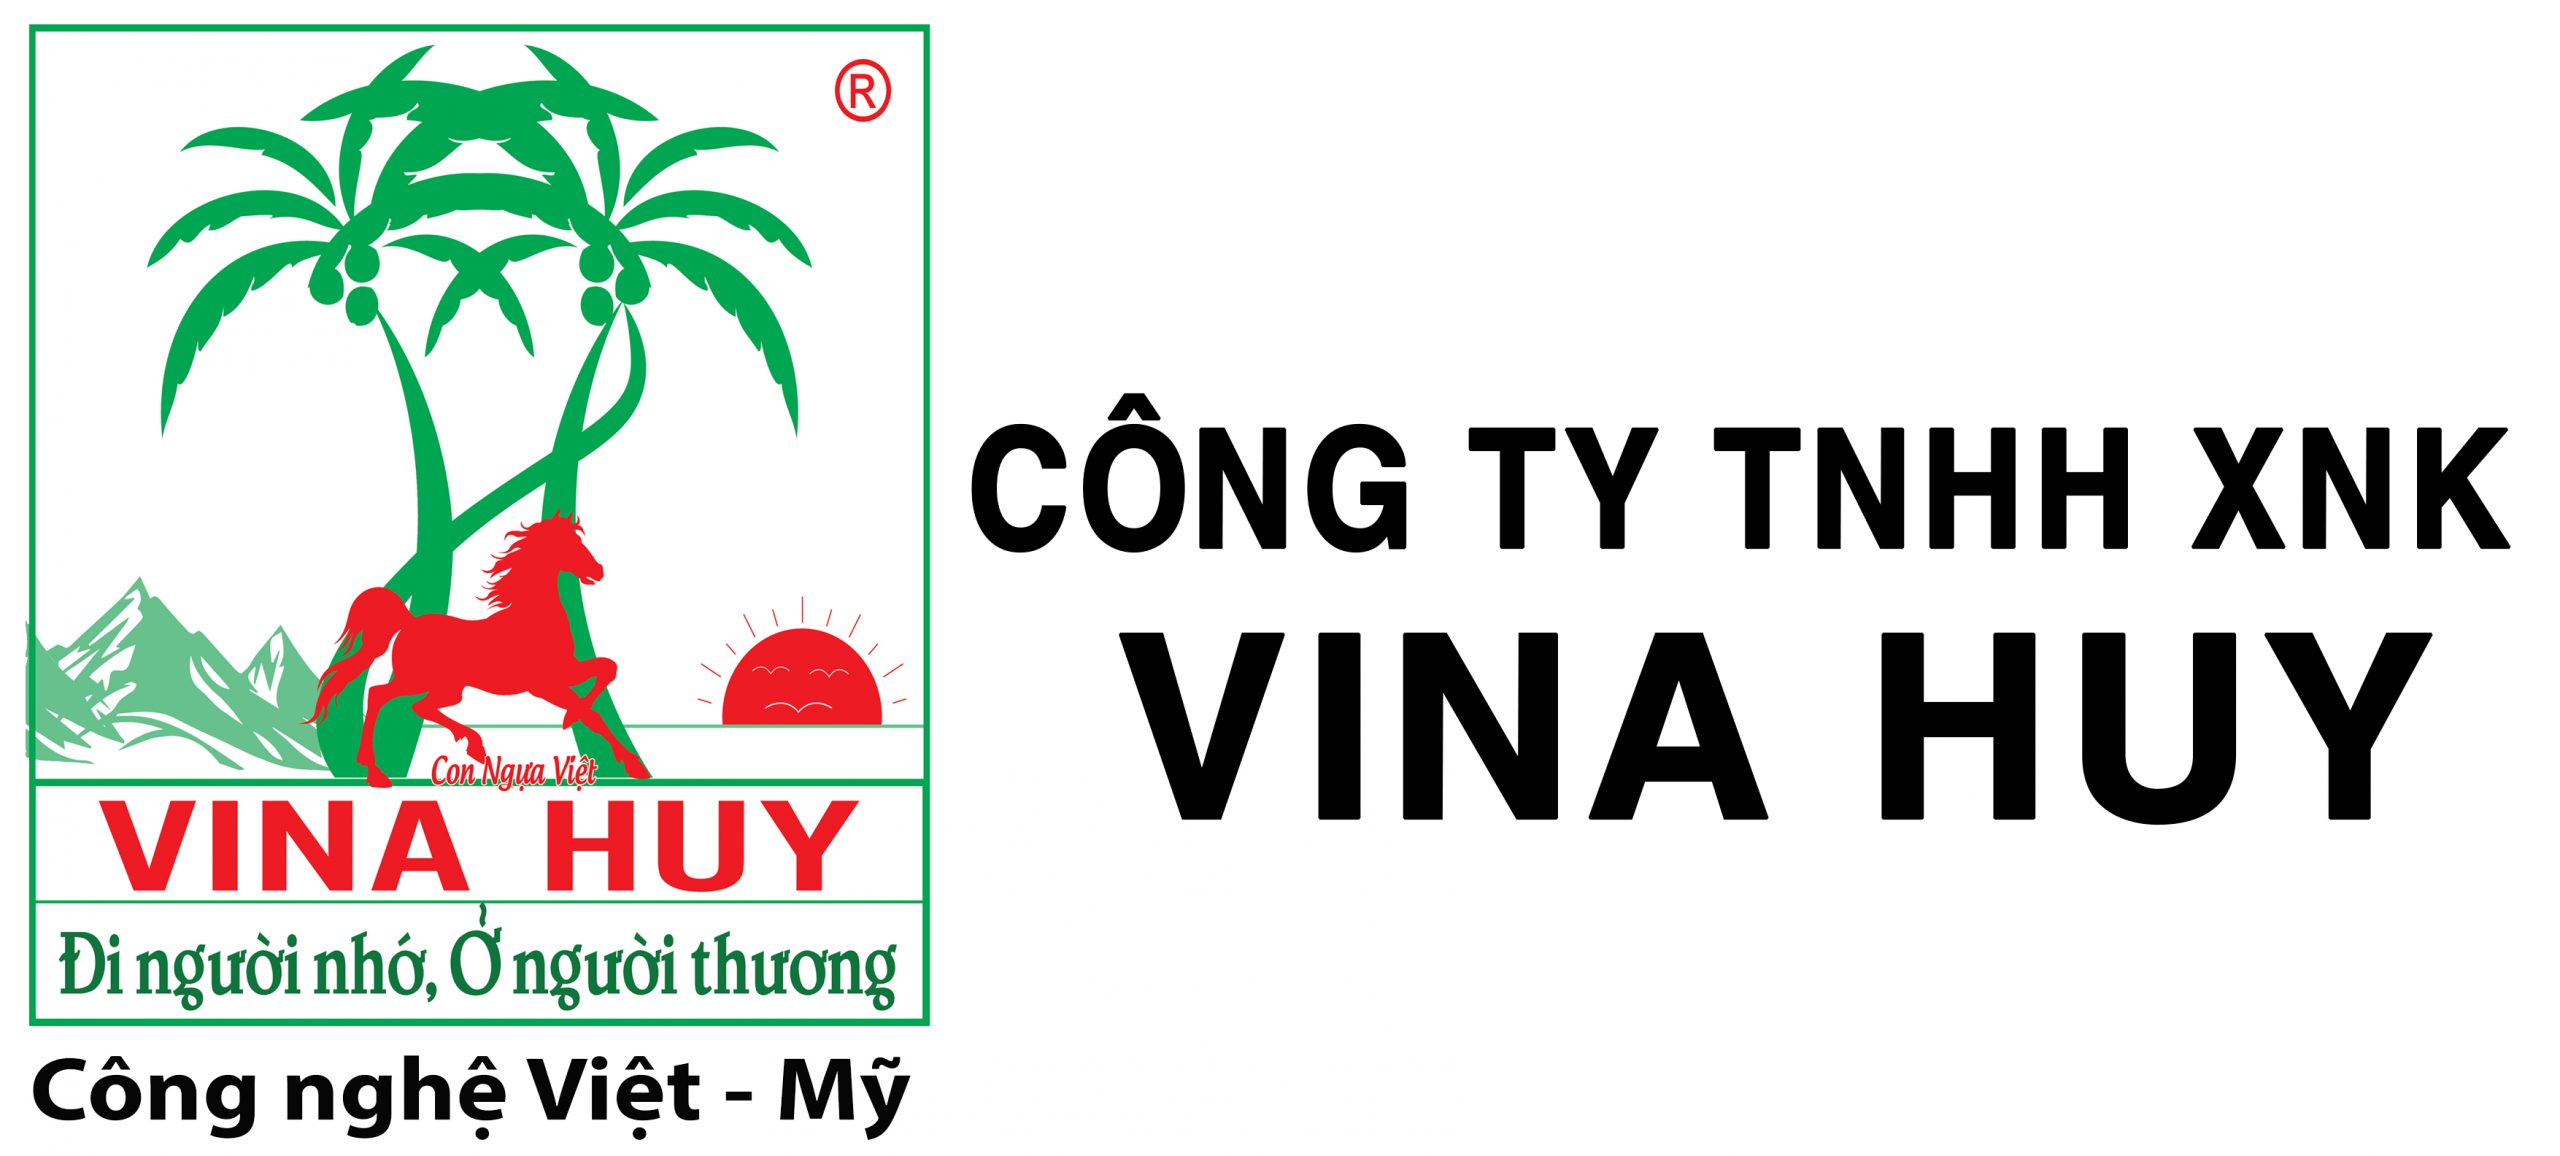 Công ty TNHH XNK Vina Huy - Chuyên sản xuất và phân phối phân bón